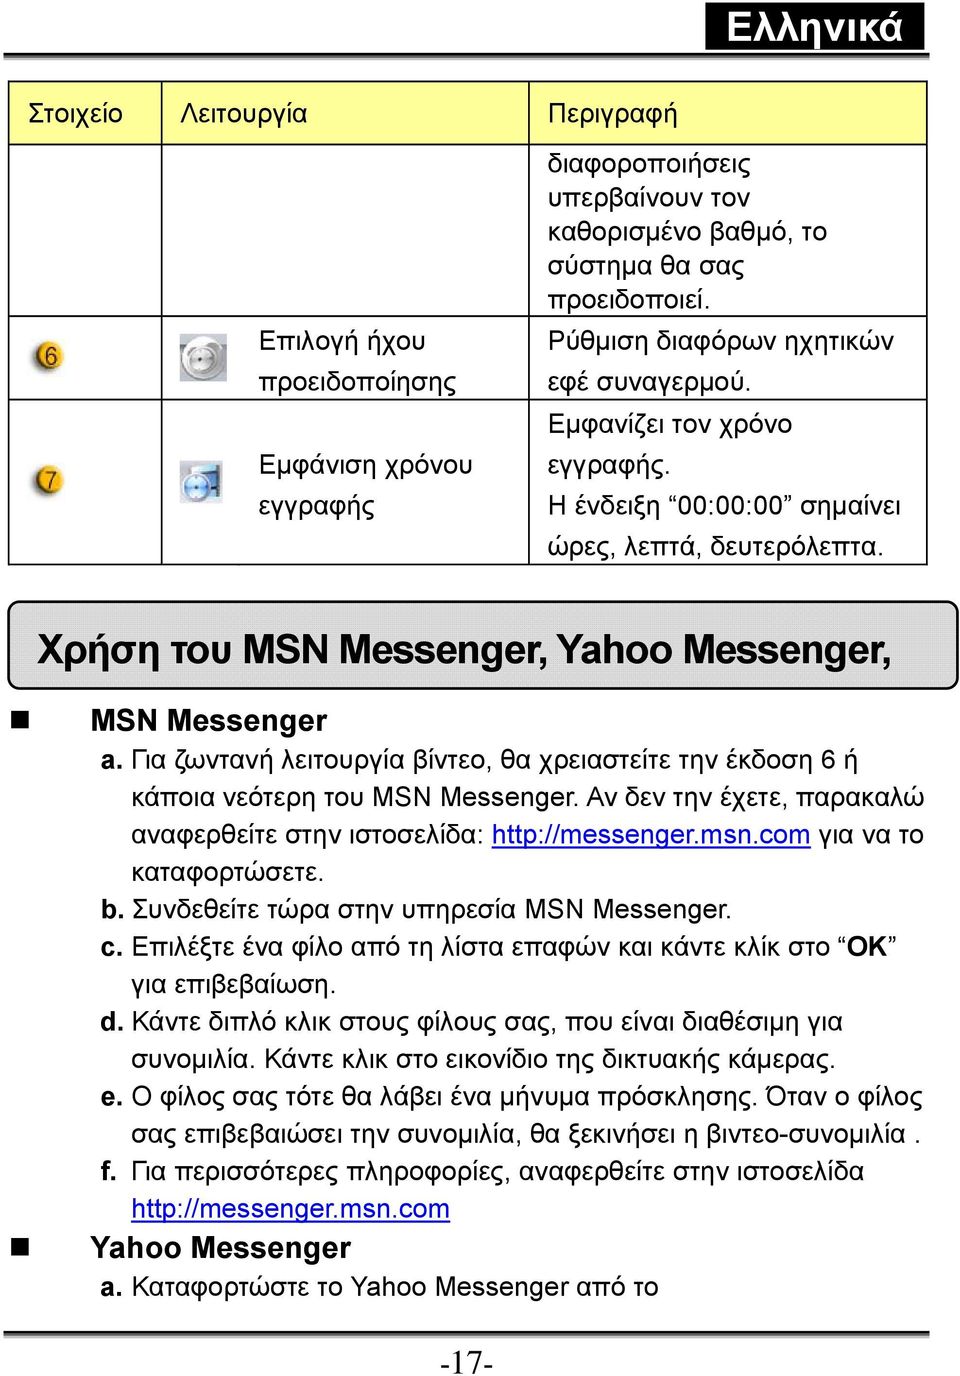 Για ζωντανή λειτουργία βίντεο, θα χρειαστείτε την έκδοση 6 ή κάποια νεότερη του MSN Messenger. Αν δεν την έχετε, παρακαλώ αναφερθείτε στην ιστοσελίδα: http://messenger.msn.com για να το καταφορτώσετε.